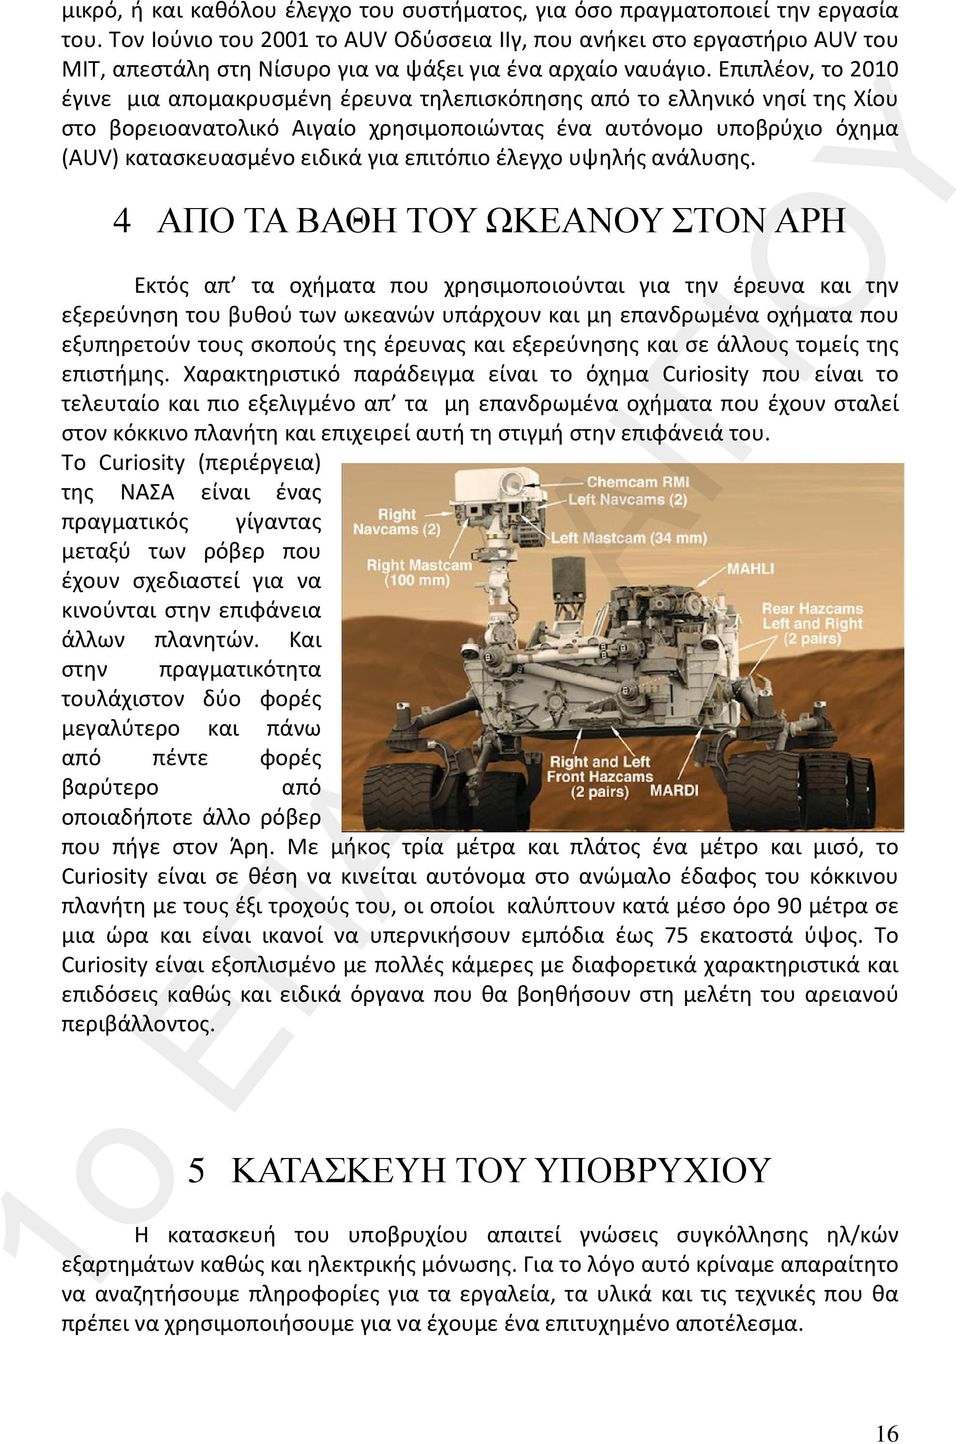 Επιπλέον, το 2010 έγινε μια απομακρυσμένη έρευνα τηλεπισκόπησης από το ελληνικό νησί της Χίου στο βορειοανατολικό Αιγαίο χρησιμοποιώντας ένα αυτόνομο υποβρύχιο όχημα (AUV) κατασκευασμένο ειδικά για